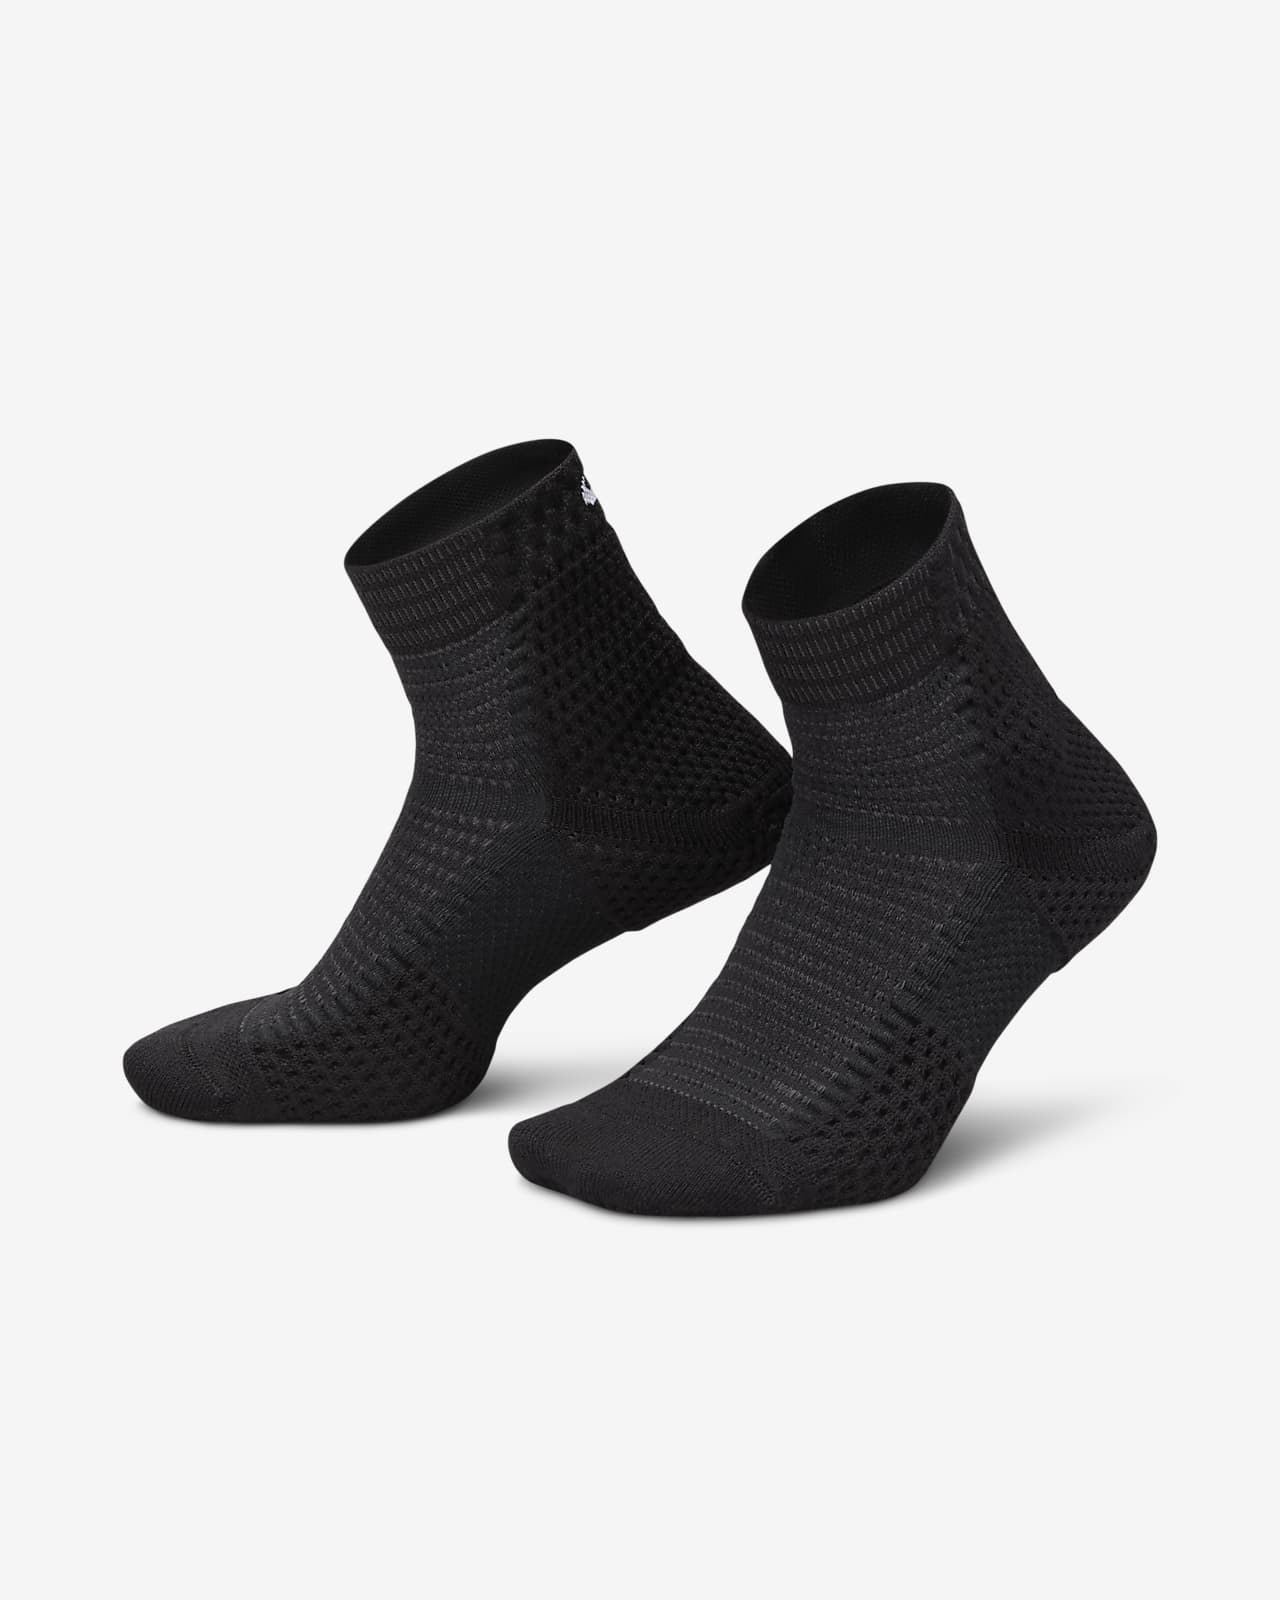 Calze ammortizzate alla caviglia Dri-FIT ADV Nike Unicorn (1 paio)